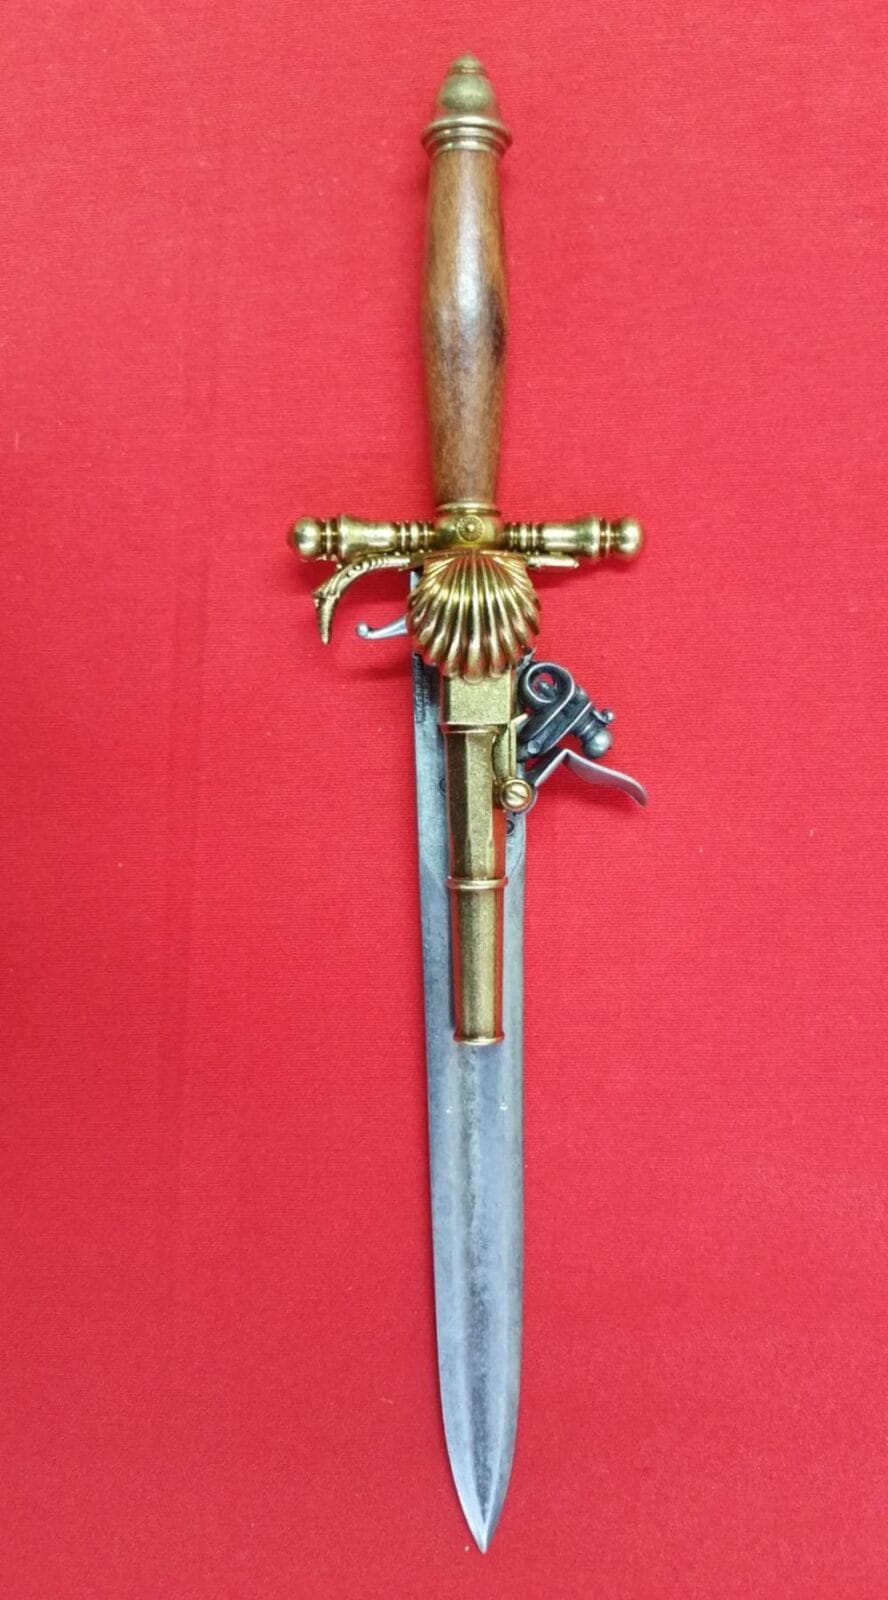 1204 Pistola de chispa con puñal incorporado S XVIII - Espadas y Más